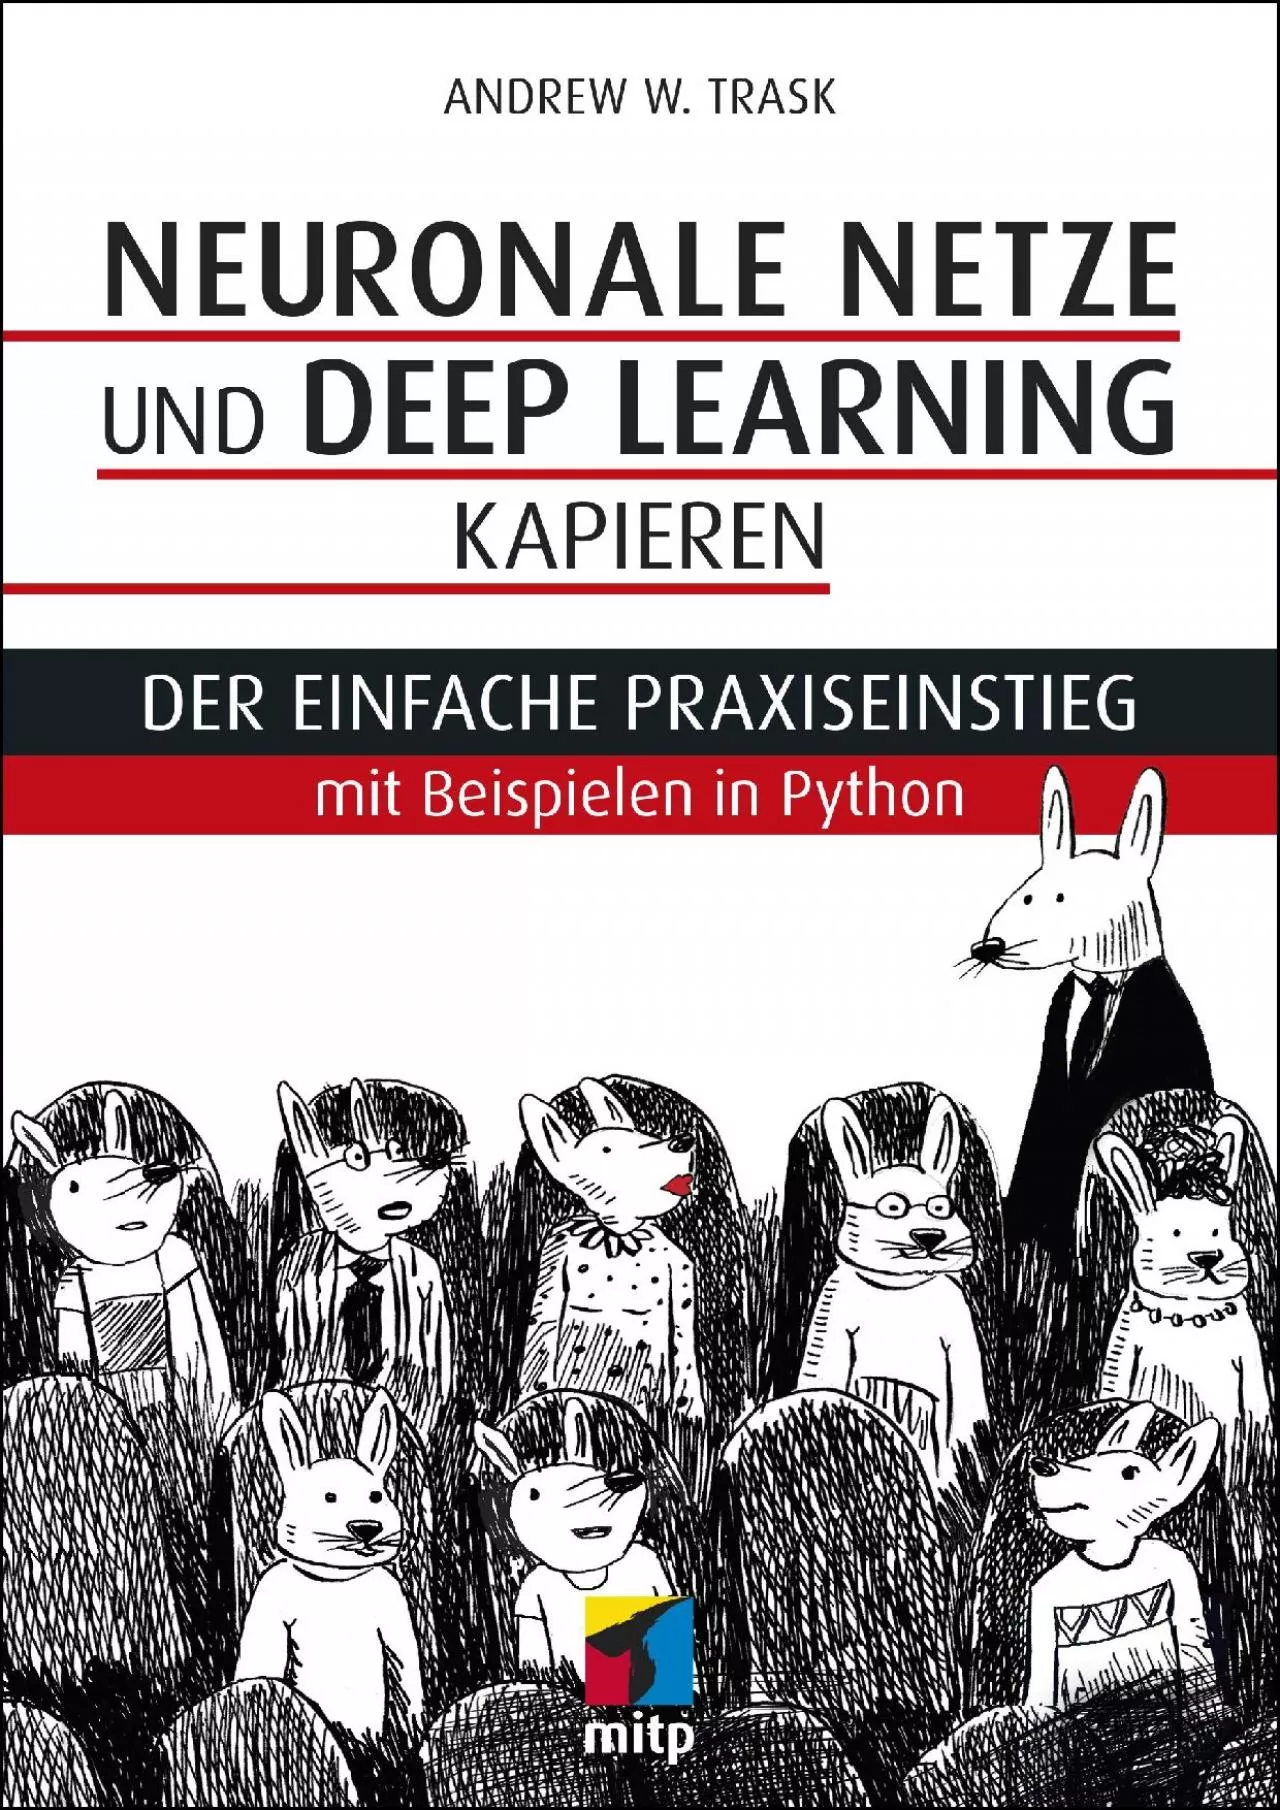 [FREE]-Neuronale Netze und Deep Learning kapieren Der einfache Praxiseinstieg mit Beispielen